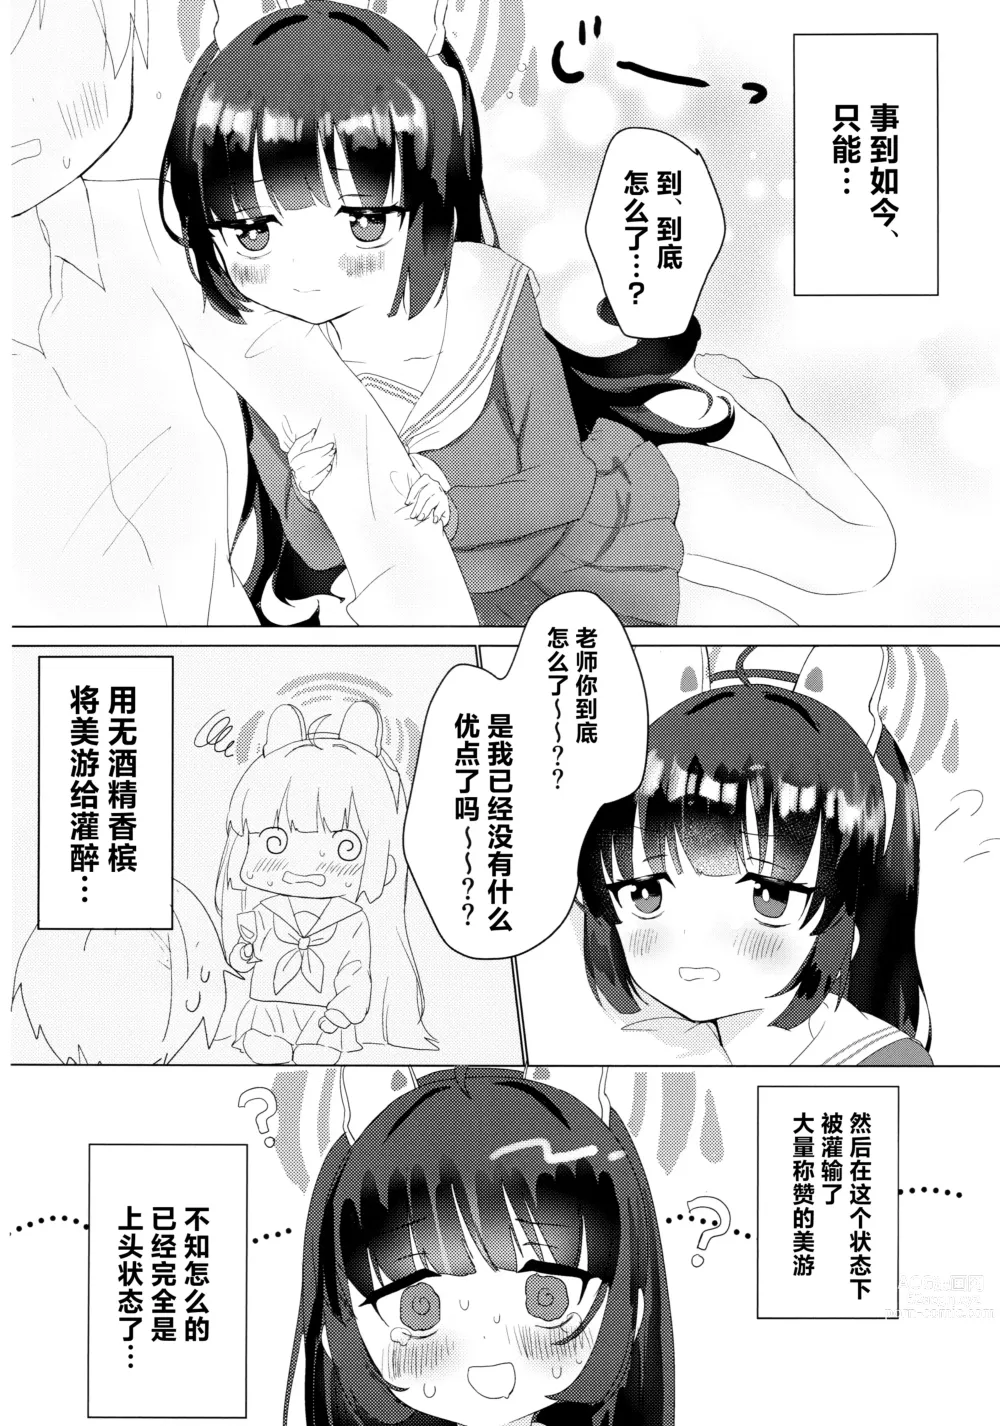 Page 7 of doujinshi Kasumizawa Miyu o Amayakashitai!